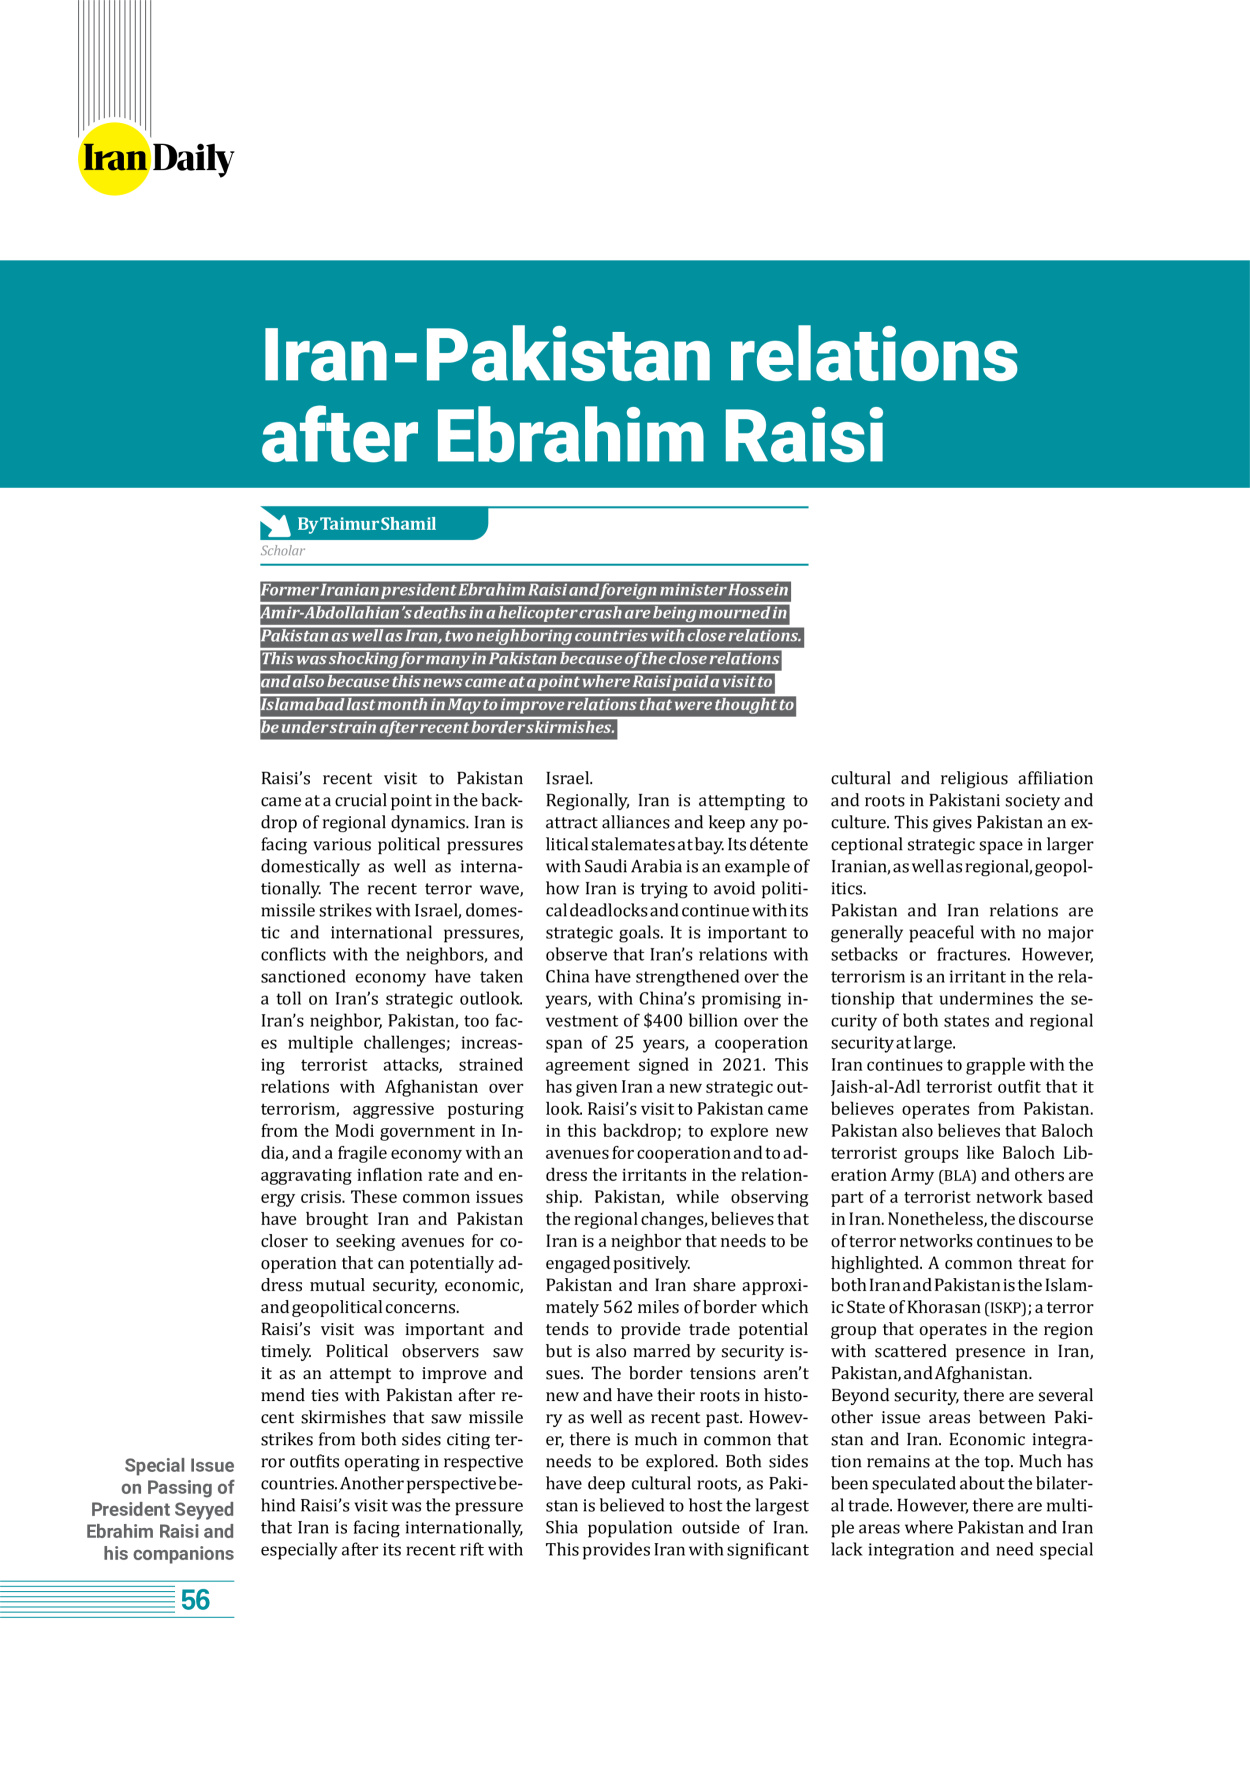 روزنامه ایران - ویژه نامه وِزه نامه چهلم شهید رییسی( انگلیسی) - ۱۷ تیر ۱۴۰۳ - صفحه ۵۶